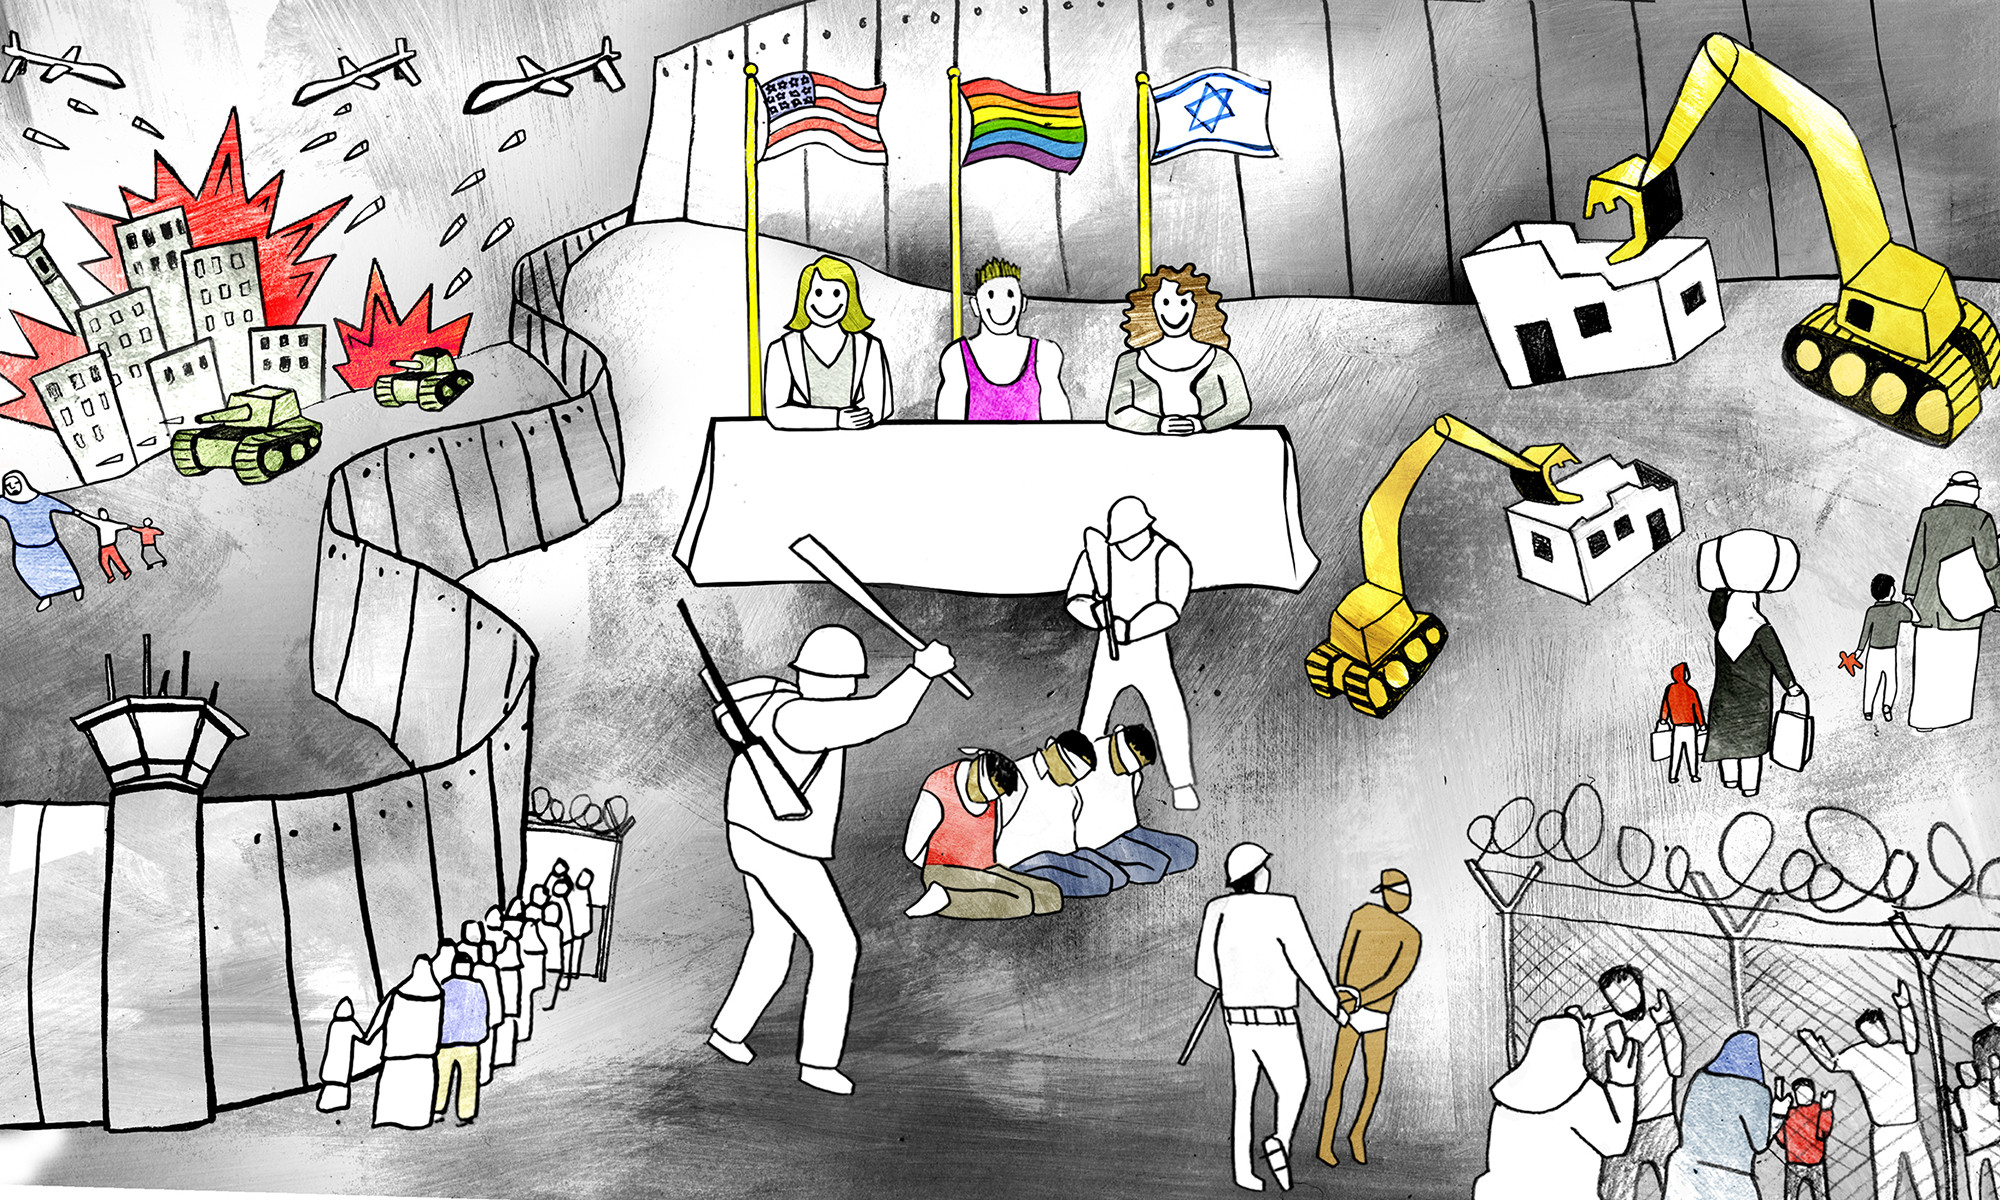 Filistin için Kuir Sinema dayanışma gösterimi izlenimleri | Kaos GL - LGBTİ+ Haber Portalı Gökkuşağı Forumu Köşe Yazısı